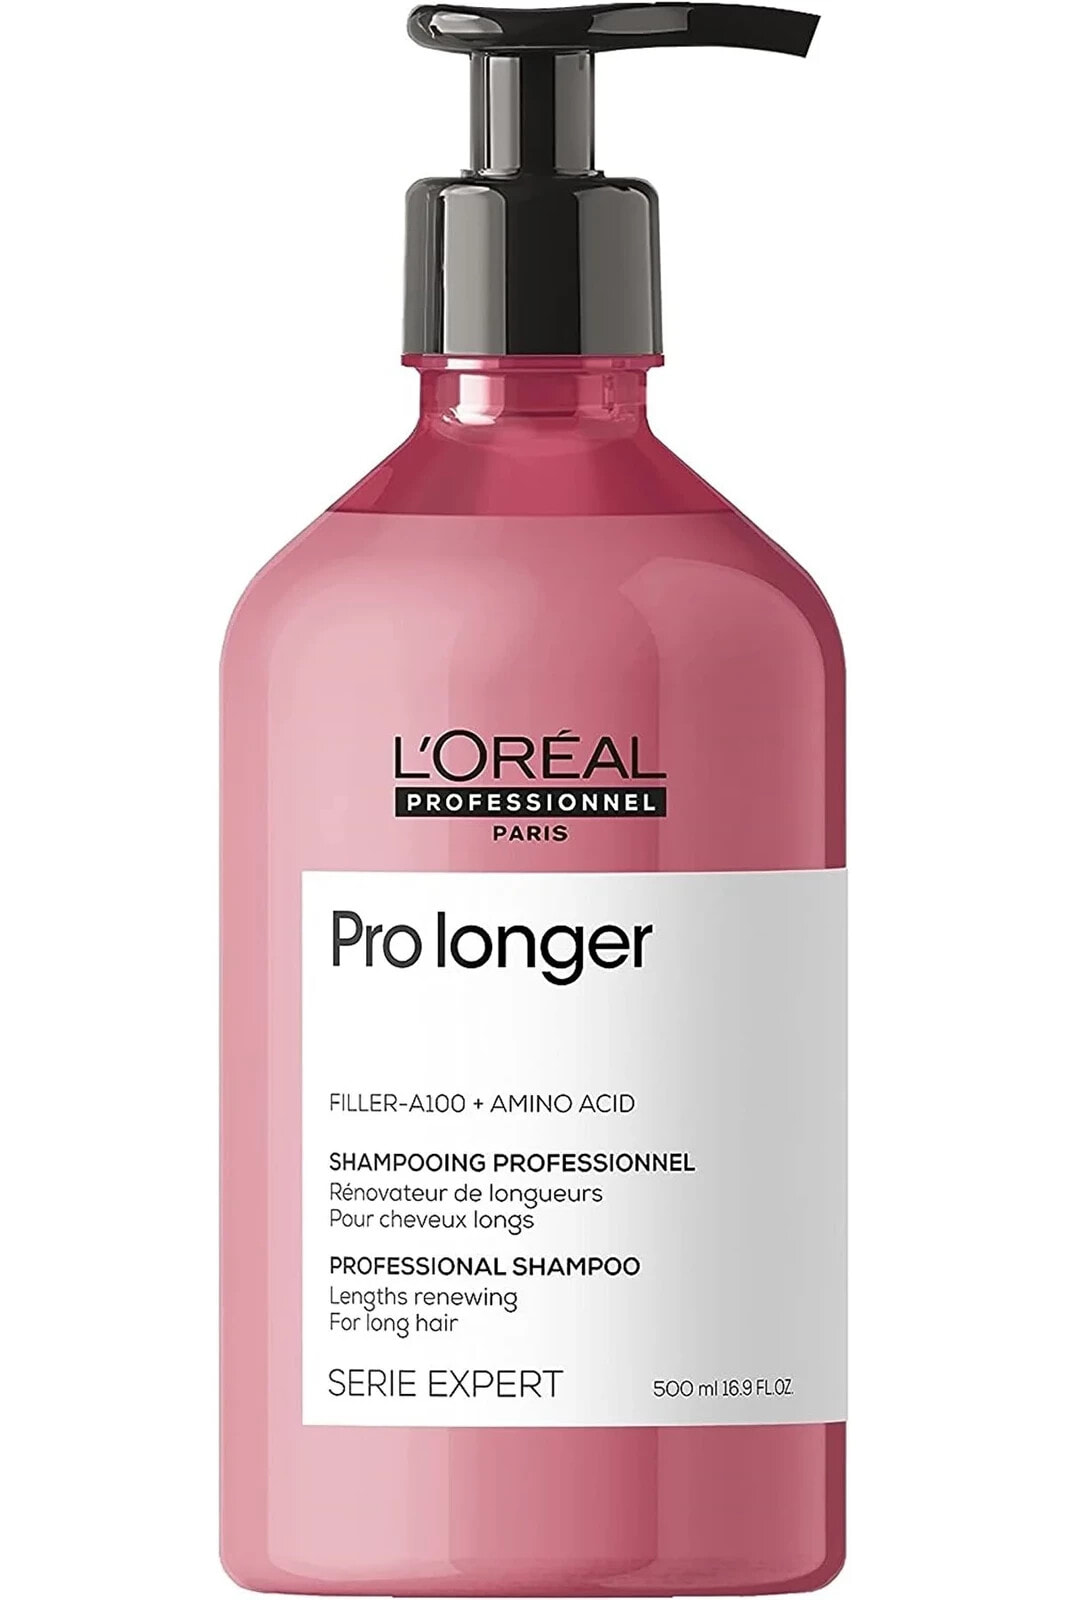 L'OREAL PROFESSİONNEL Serie Expert Pro Longer Kırılma Karşıtı Dolgunlaştırıcı Şampuan 500 Ml